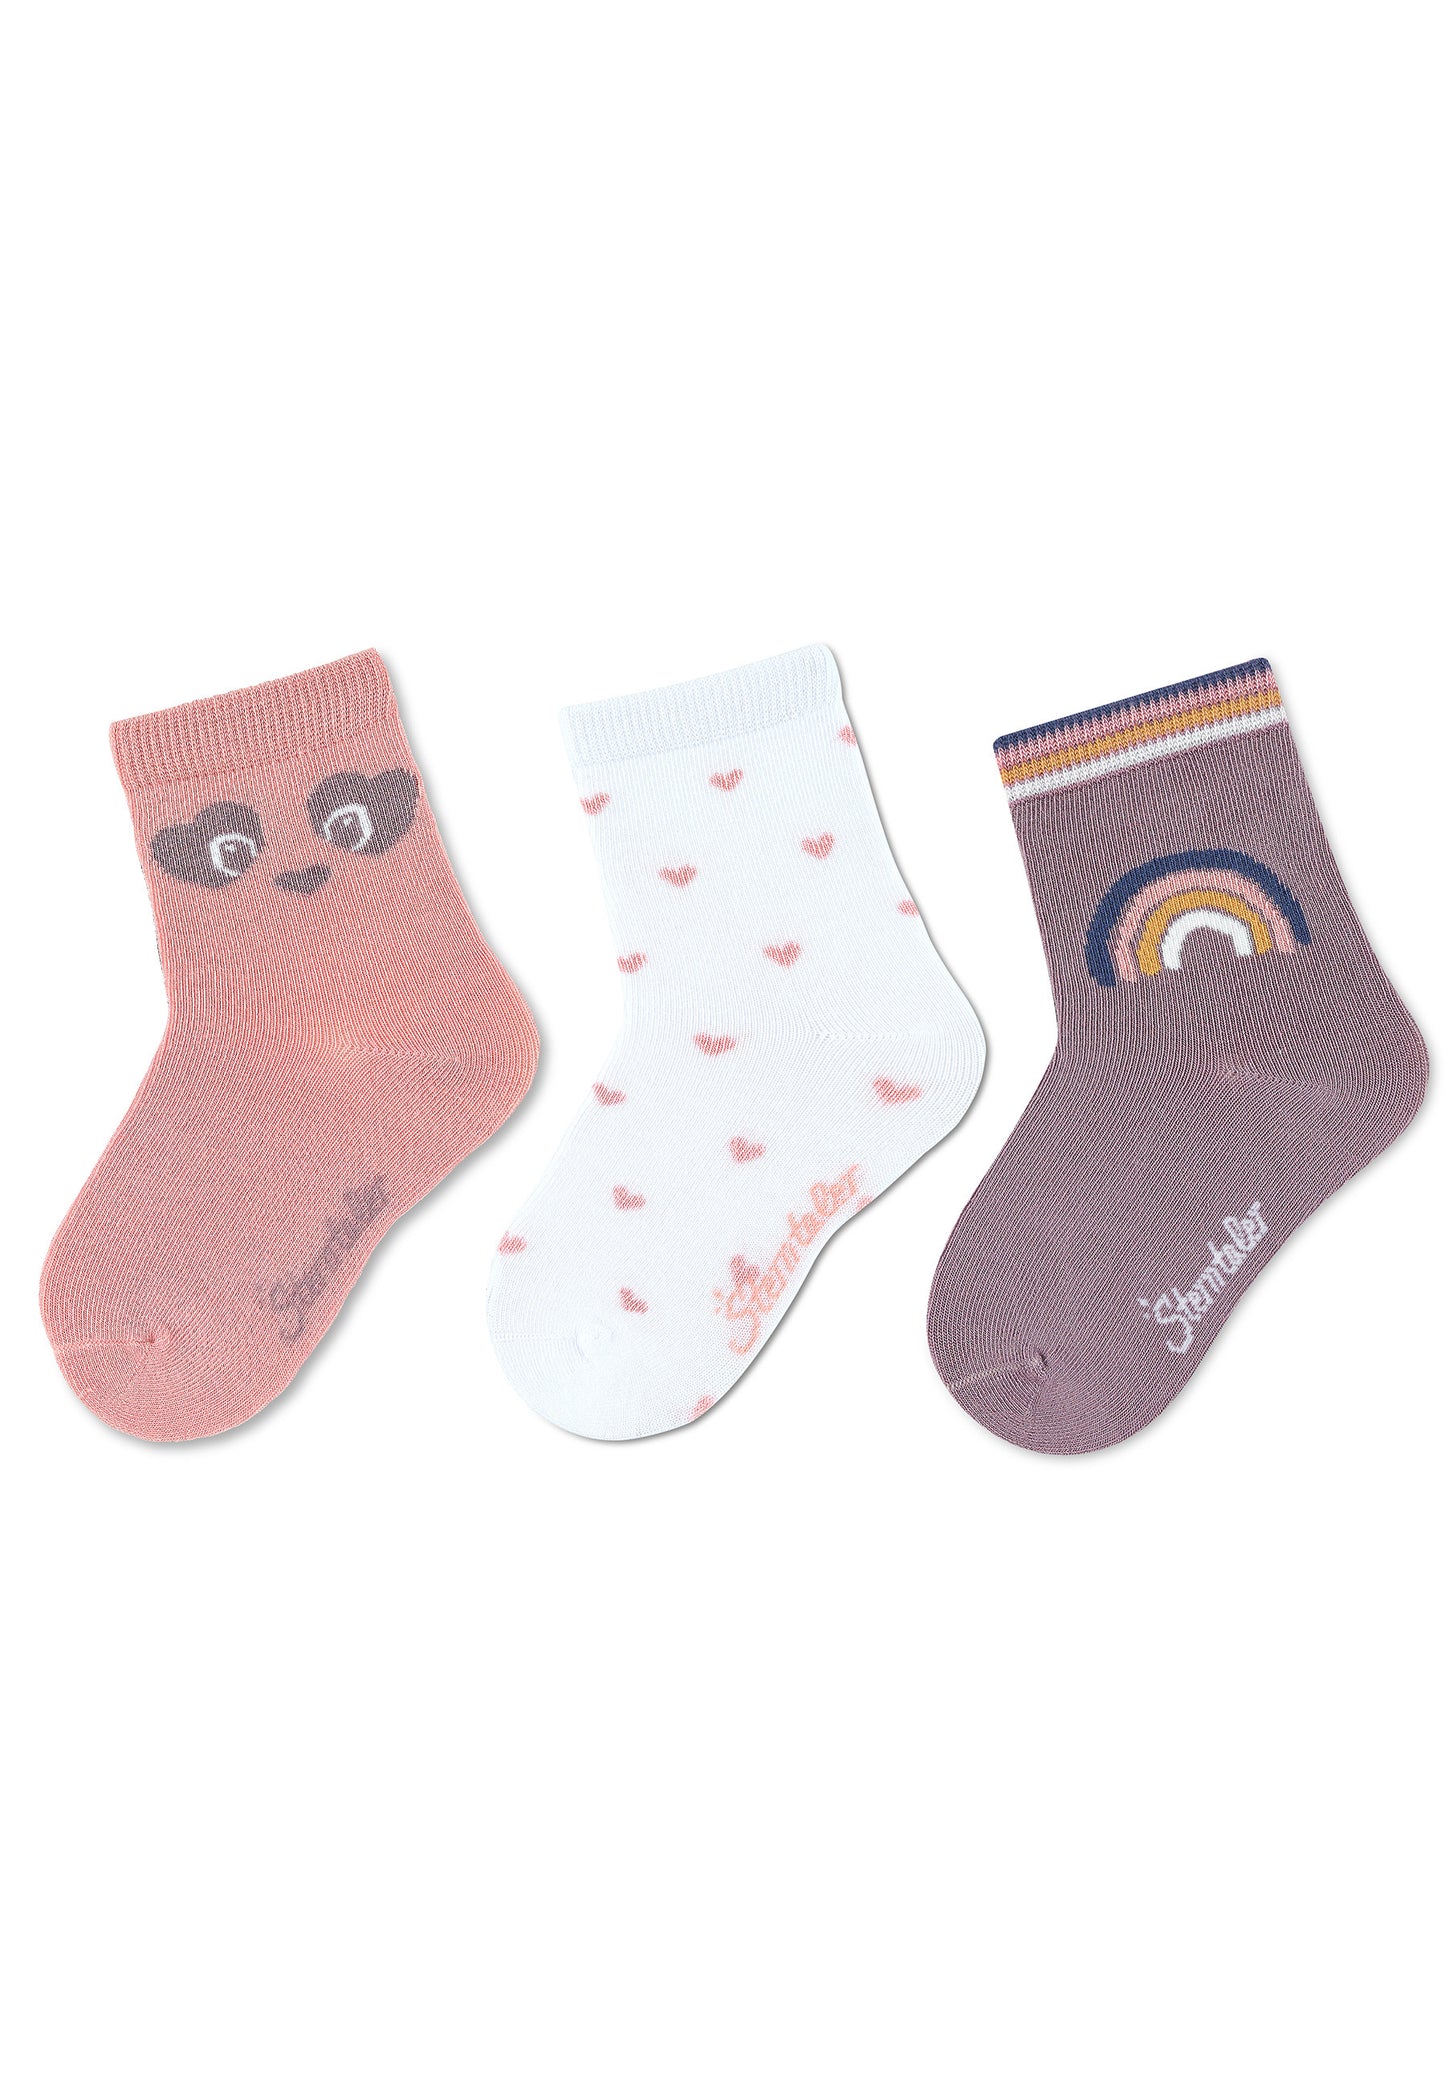 Socken Panda, 3er-Pack